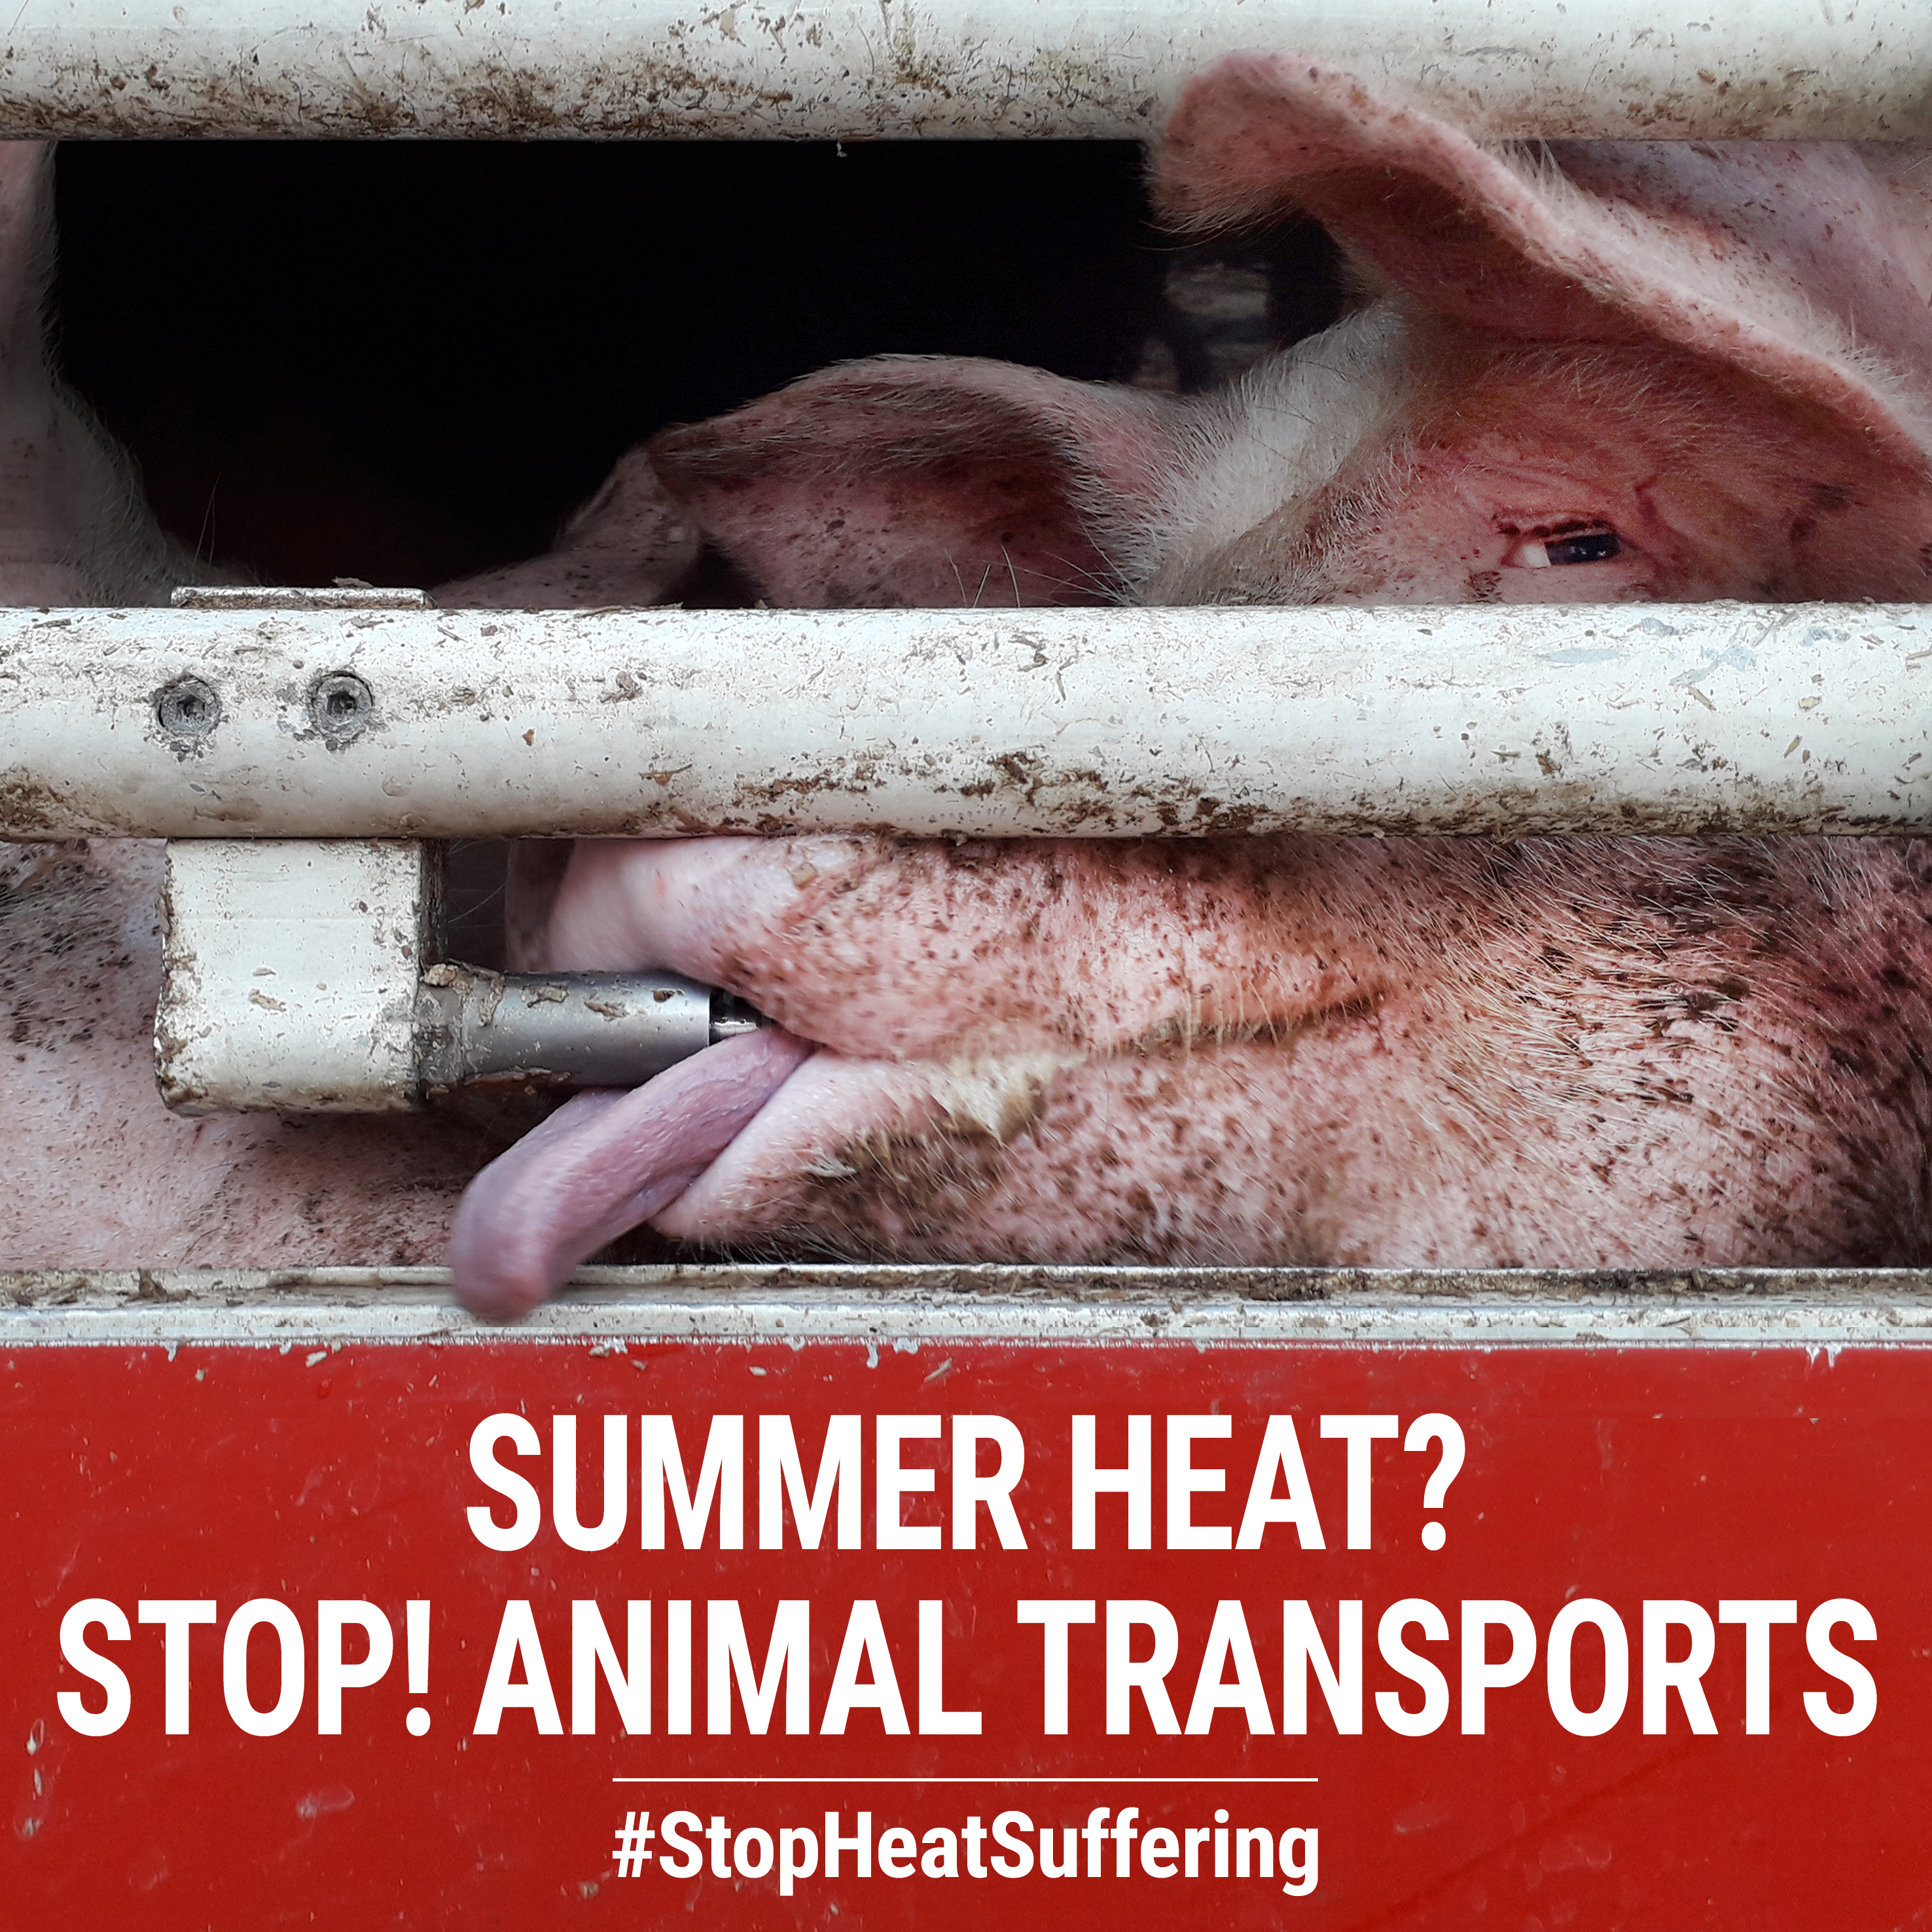 Transport zwierząt w upał sprawia cierpienie! #StopHeatSuffering